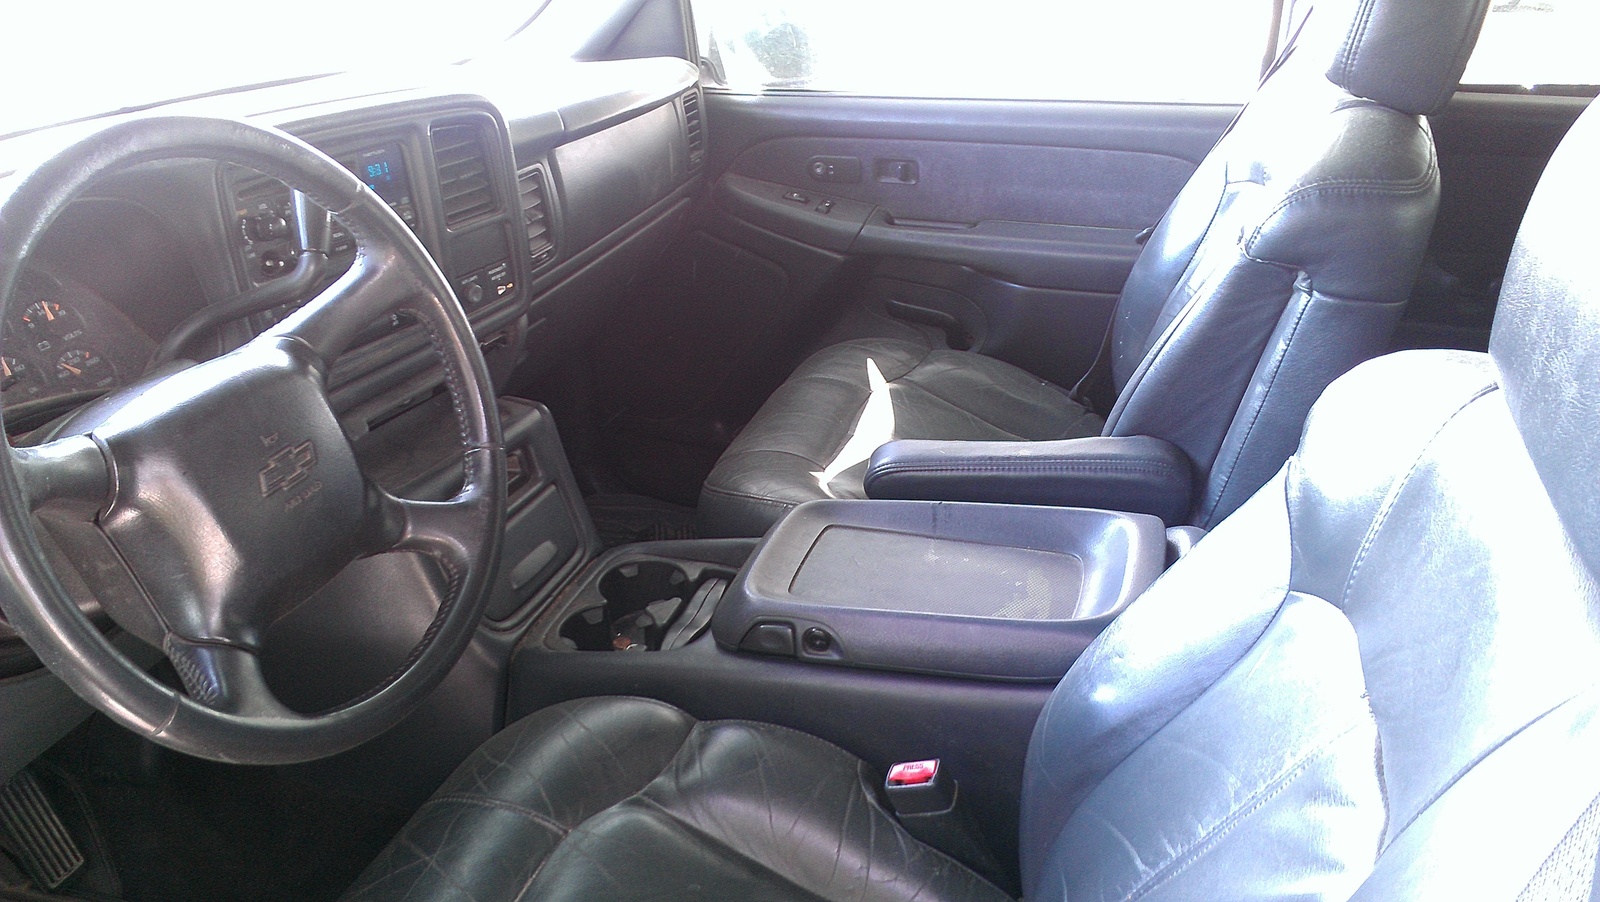 2002 silverado interior doors armrest